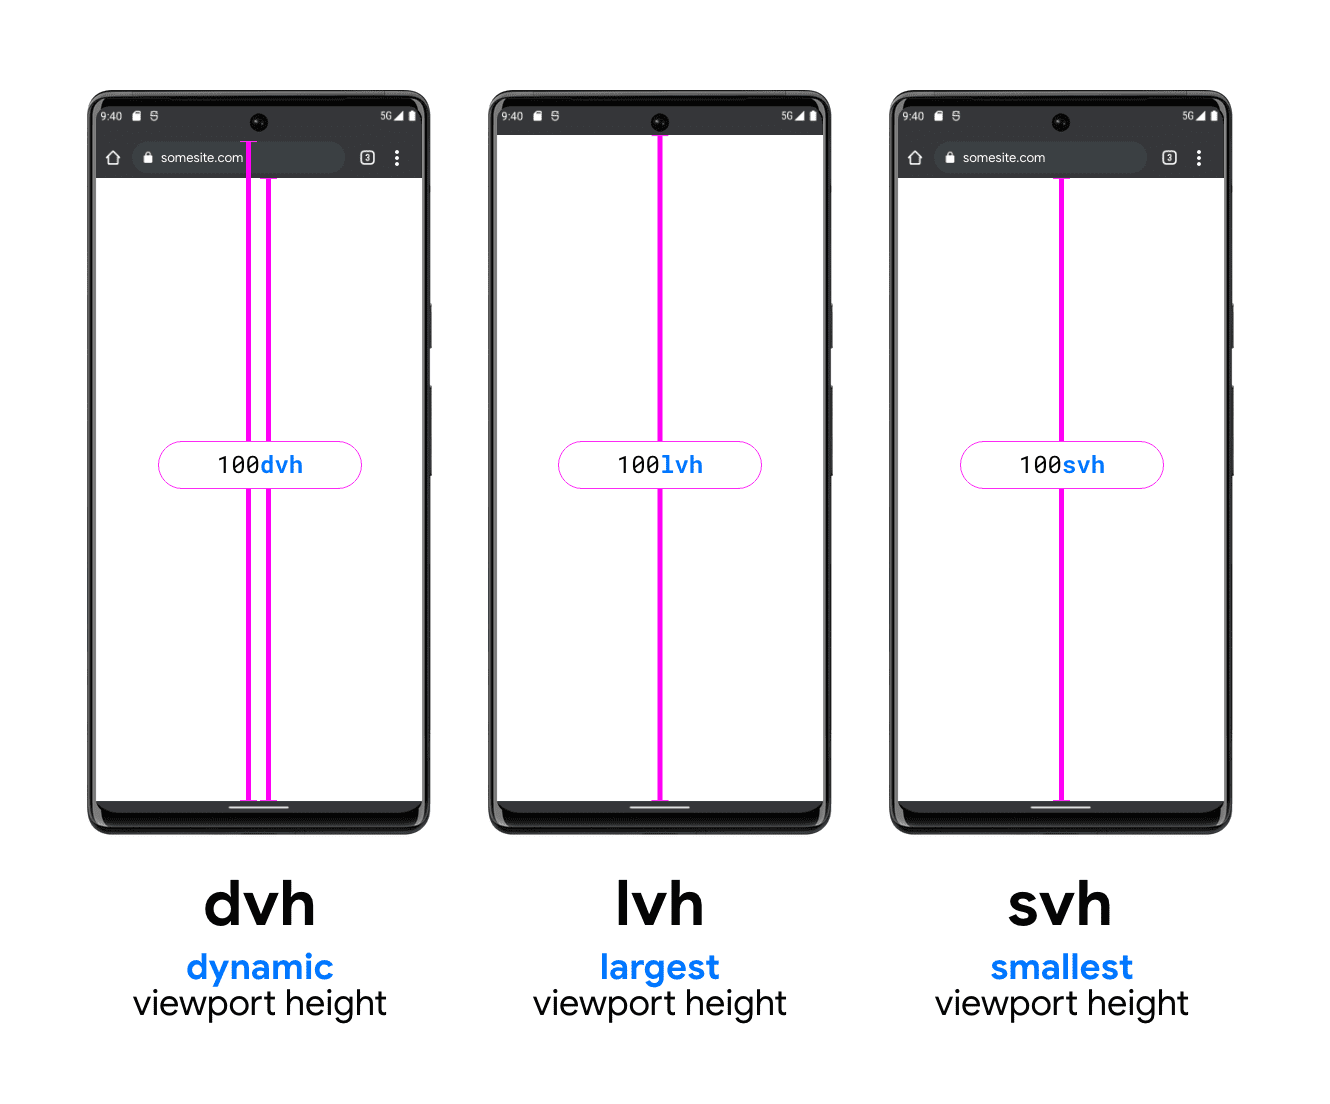 Una imagen con tres teléfonos que ilustran los DVH, LVH y SVH. El teléfono de ejemplo del DVH tiene dos líneas verticales, una entre la parte inferior de la barra de búsqueda y la parte inferior del viewport, y otra entre la parte superior de la barra de búsqueda (debajo de la barra de estado del sistema) y la parte inferior del viewport, lo que muestra cómo el DVH puede ser cualquiera de estas dos longitudes. LVH se muestra en el medio con una línea entre la parte inferior de la barra de estado del dispositivo y el botón del viewport del teléfono. El último es el ejemplo de la unidad de SVH, que muestra una línea desde la parte inferior de la barra de búsqueda del navegador hasta la parte inferior del viewport